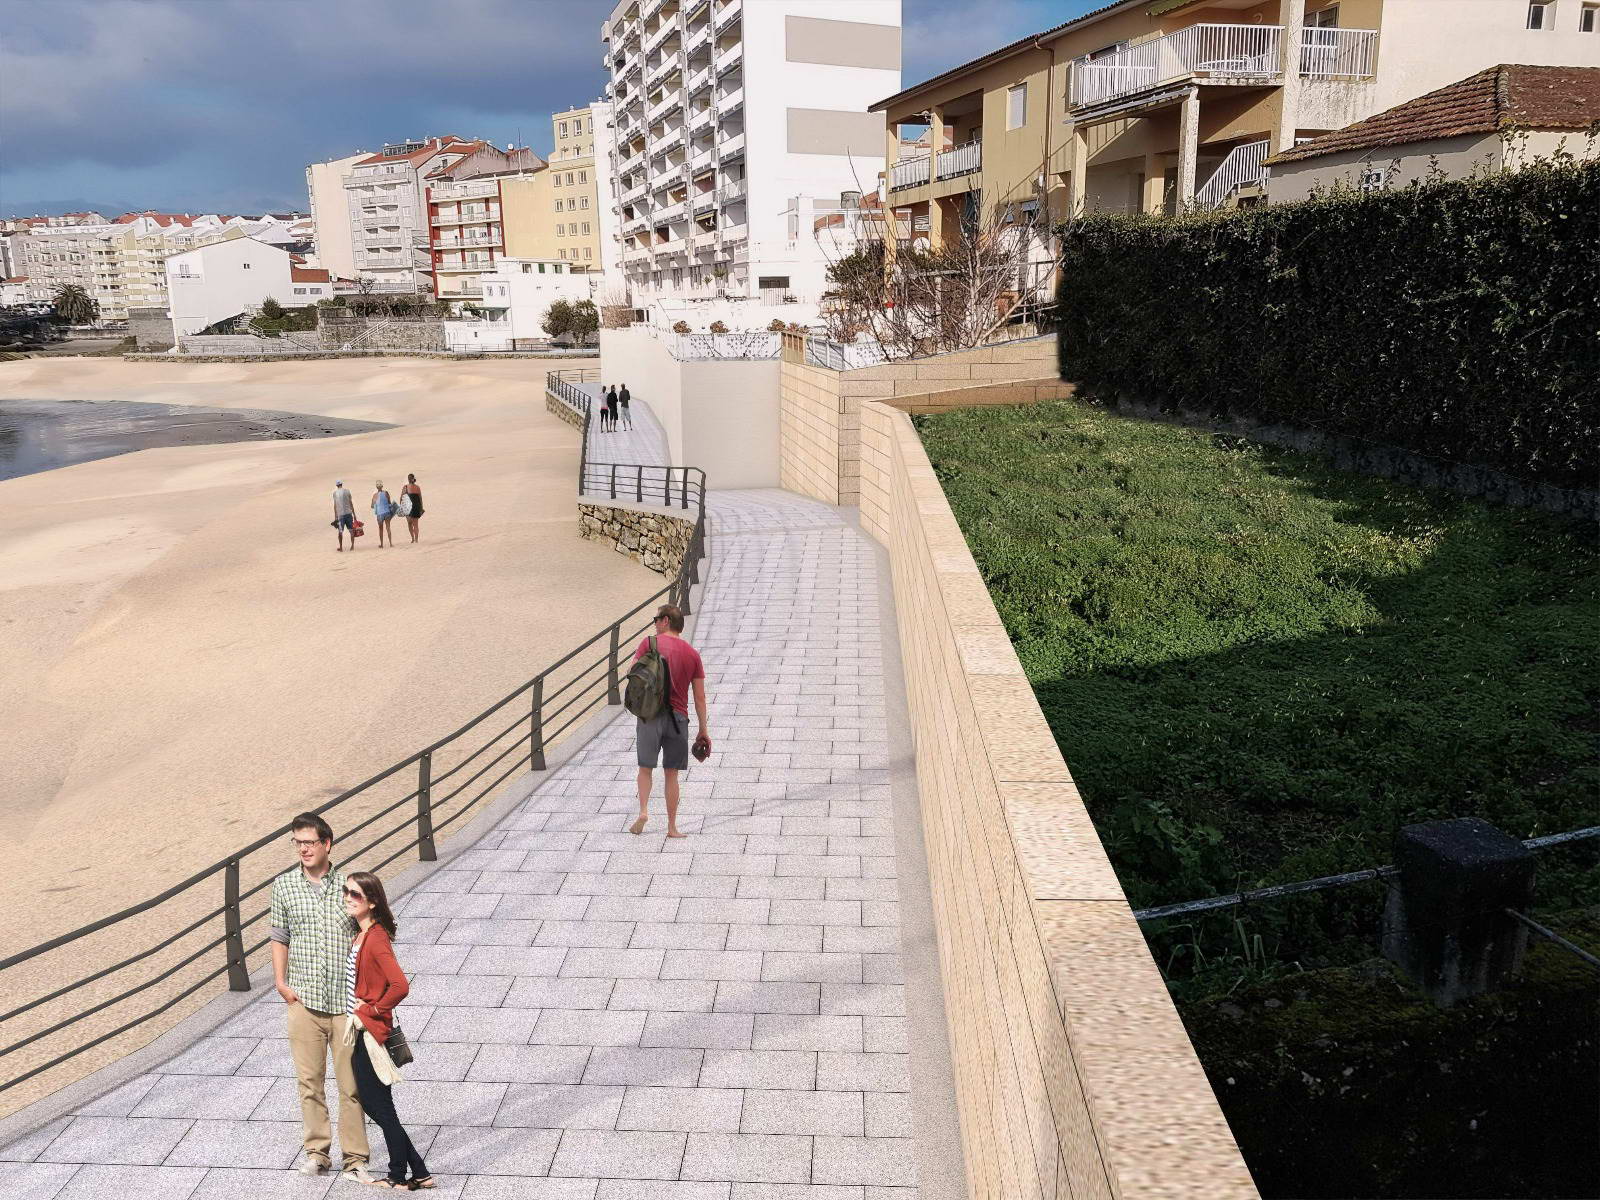 O proxecto de mellora da Praia de Carabuxeira inclúe un paseo marítimo de 360 metros que permitirá recuperar unha parte da fachada marítima ata agora case inaccesible para veciños e visitantes